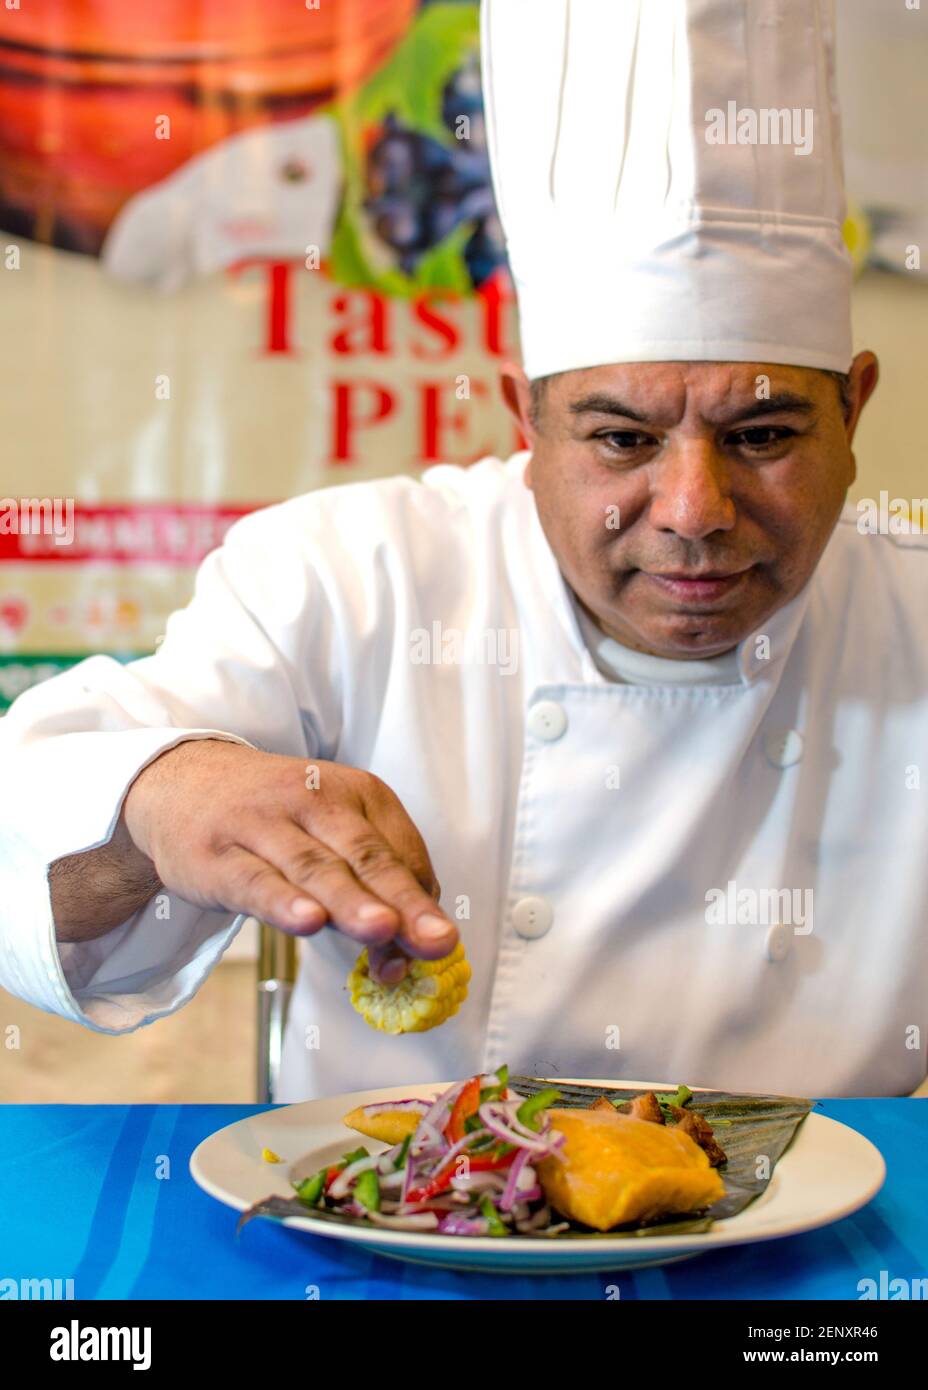 Koch Finishing Teller Tamal. Er trägt ganz weiß und legt den letzten Schliff, eine Zitrone, auf einen Teller Tamal mit einer Seite Gemüse. Stockfoto